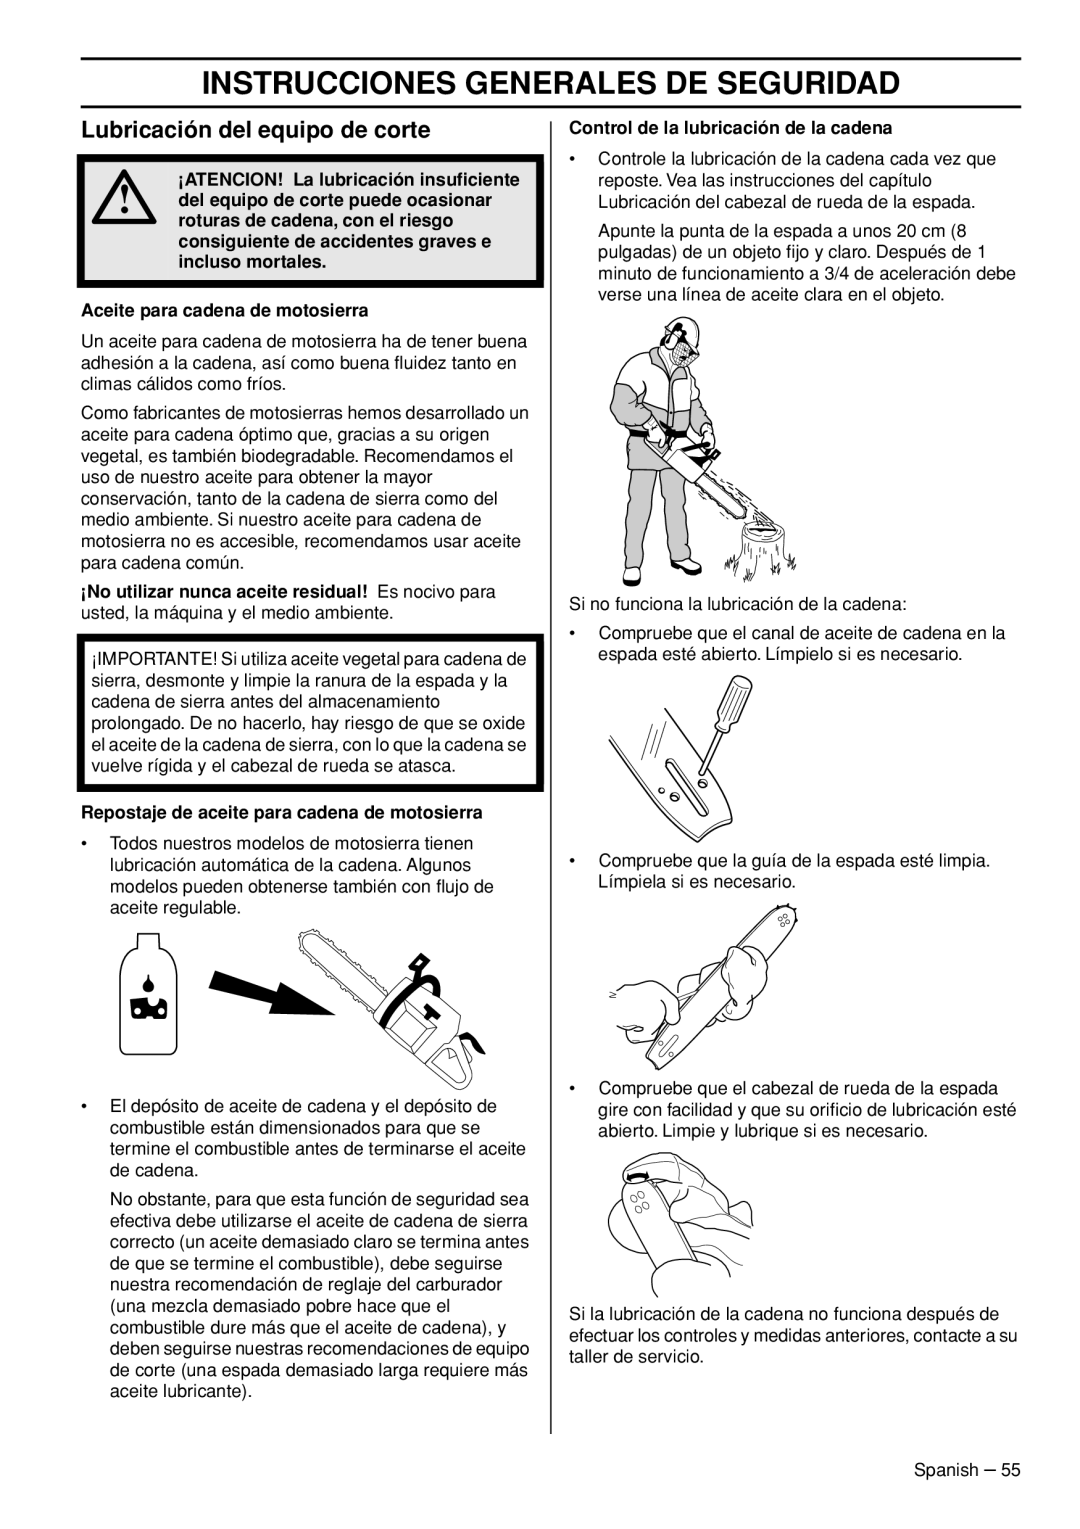 Husqvarna 445e TrioBrake manual Lubricación del equipo de corte, Instrucciones Generales De Seguridad 